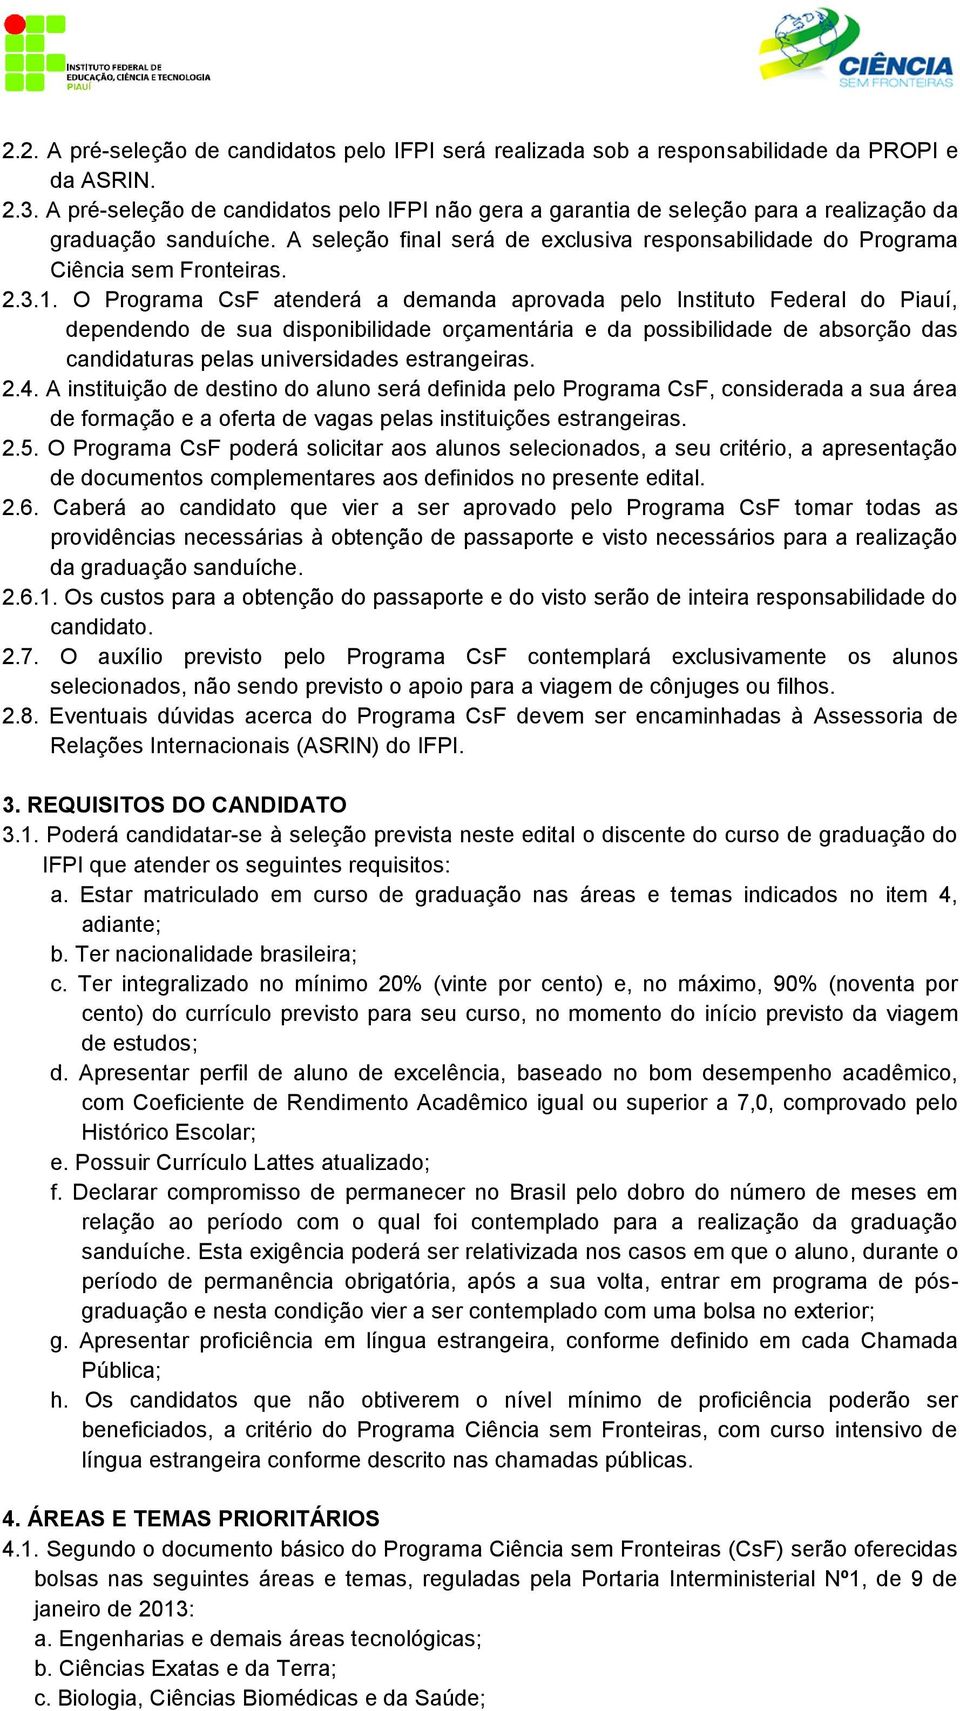 3.1. O Programa CsF atenderá a demanda aprovada pelo Instituto Federal do Piauí, dependendo de sua disponibilidade orçamentária e da possibilidade de absorção das candidaturas pelas universidades